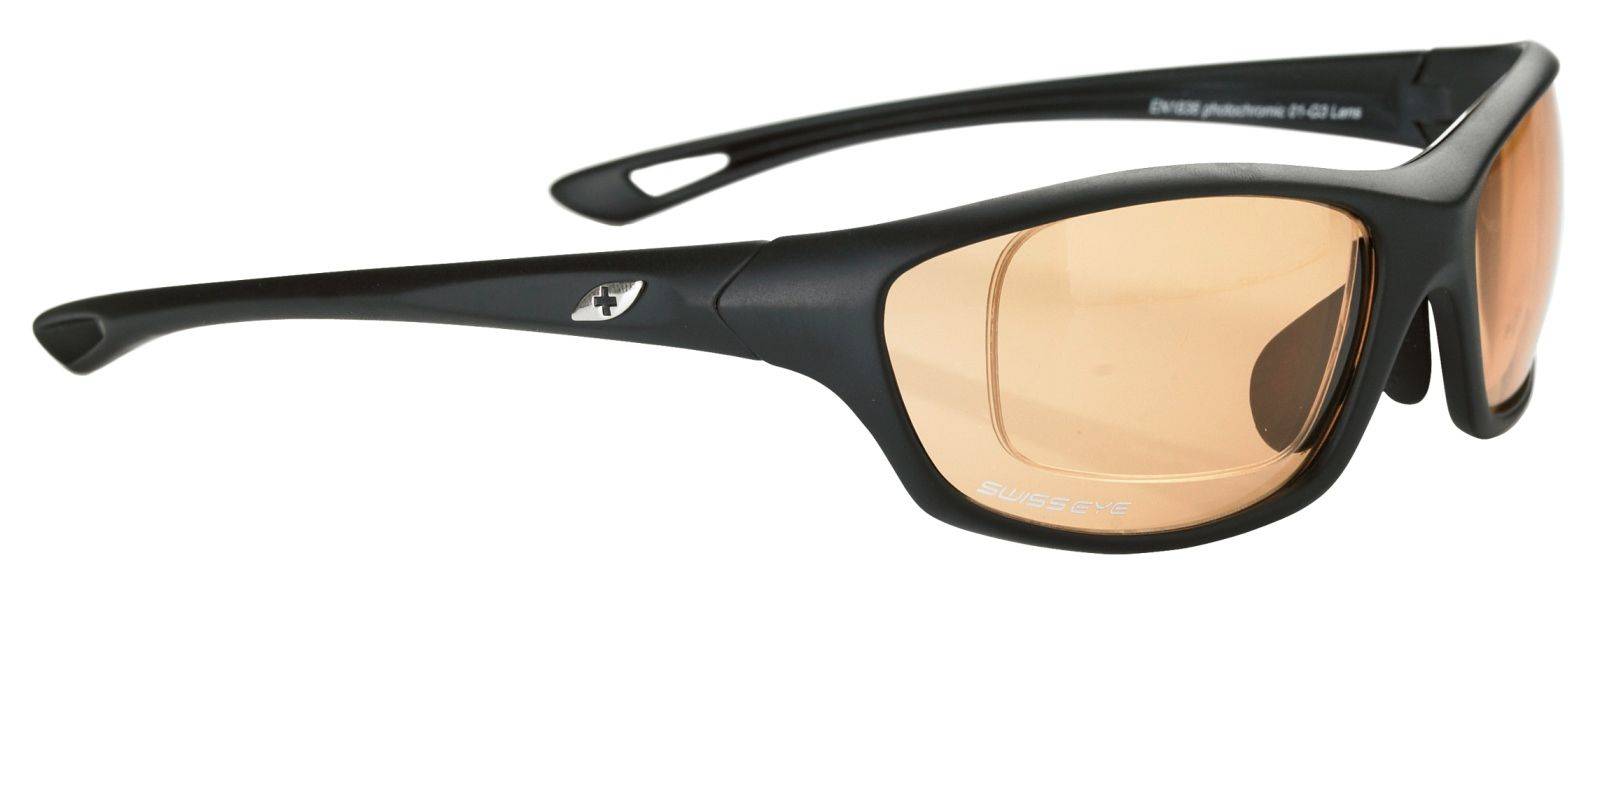 Солнцезащитные очки с диоптриями - как выбирать линзы при нарушениях зрения